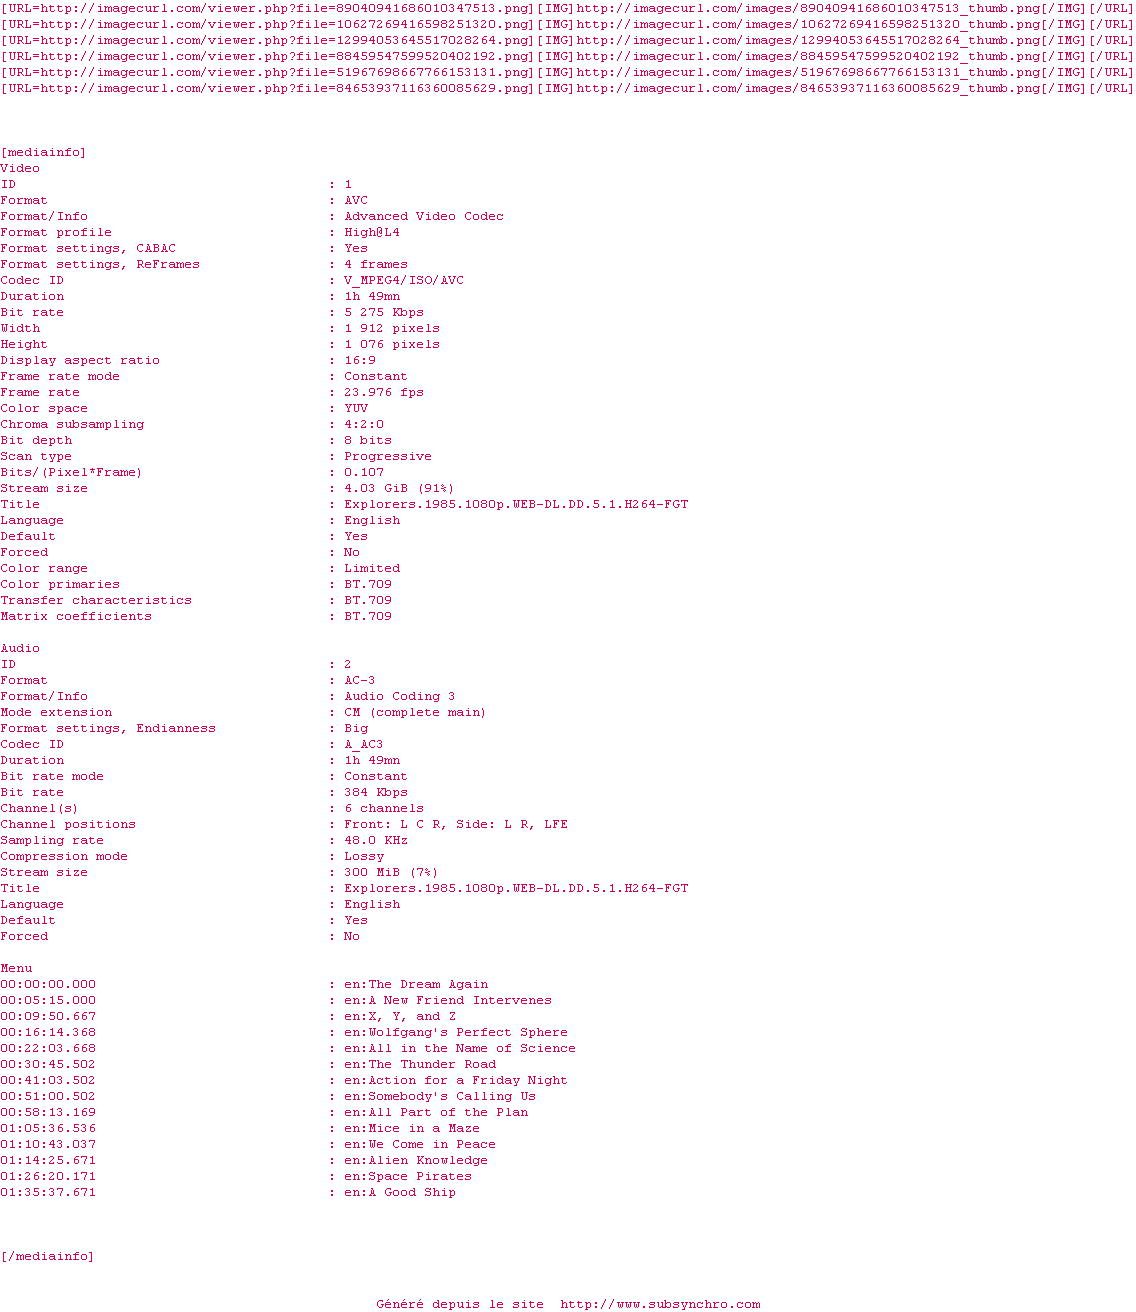 Nfo de la release Explorers.1985.1080p.WEB-DL.DD5.1.H264-FGT